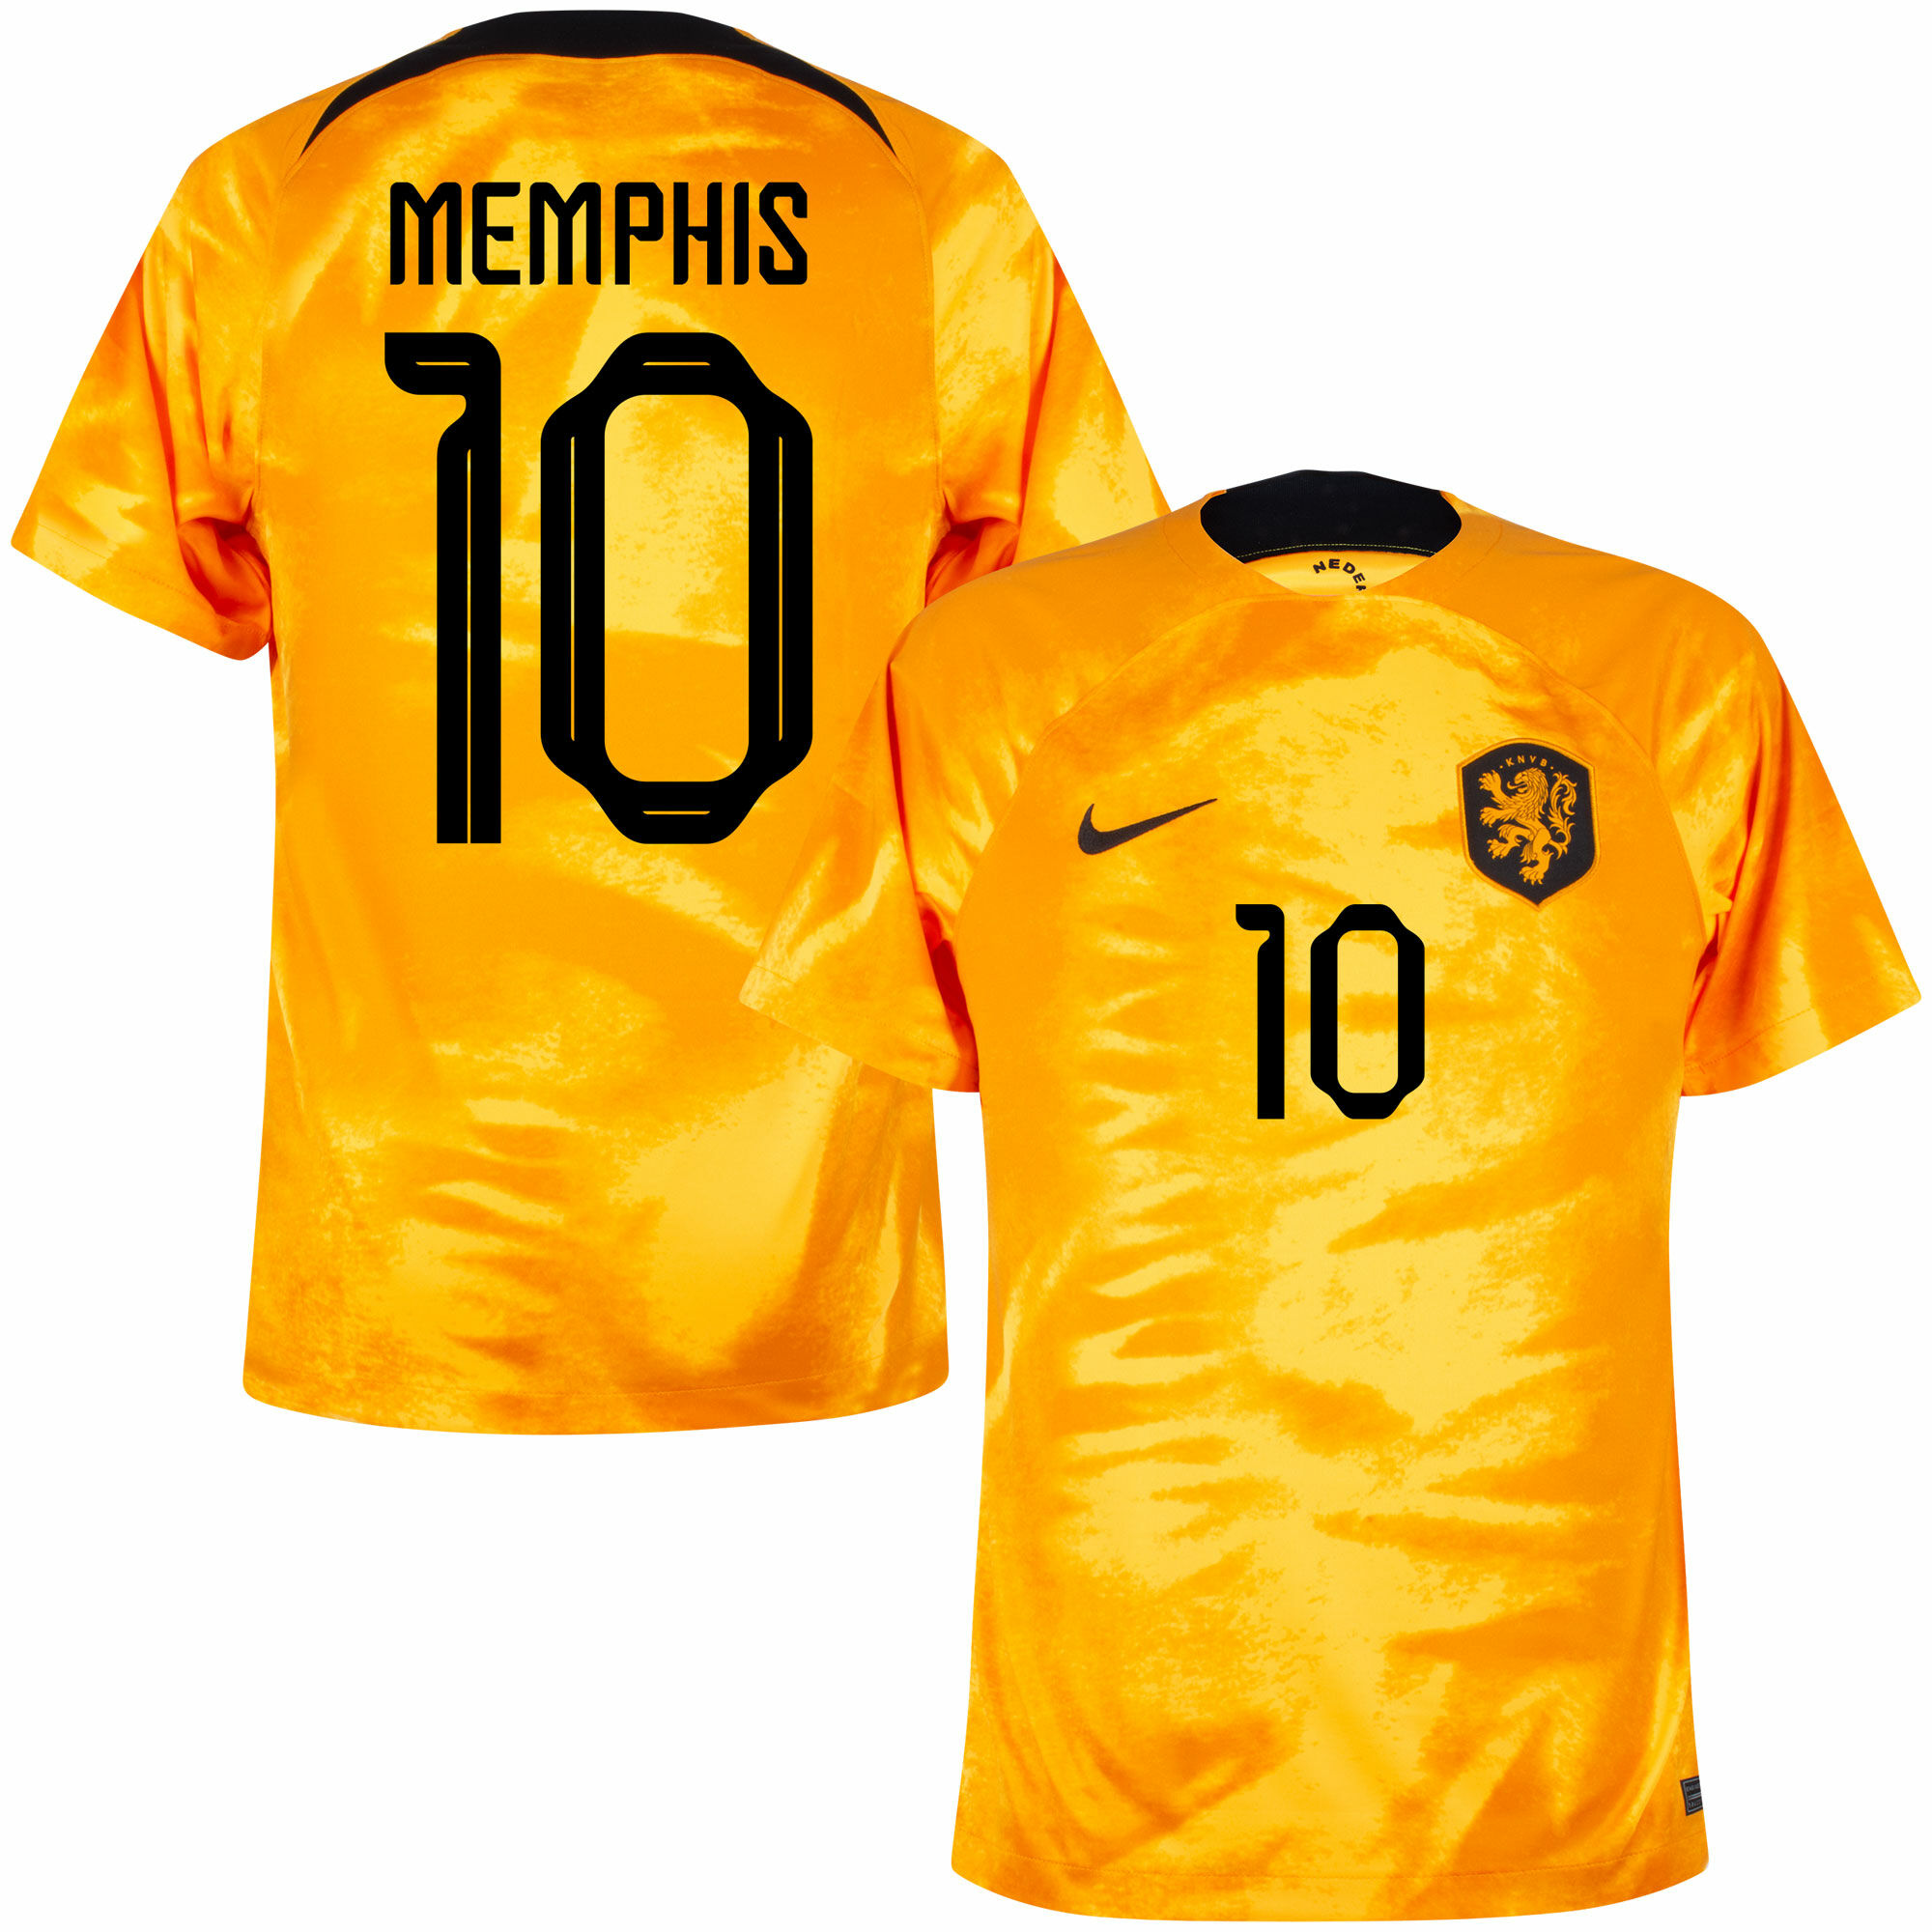 Nizozemí - Dres fotbalový - Memphis Depay, oranžový, oficiální potisk, číslo 10, domácí, sezóna 2022/23